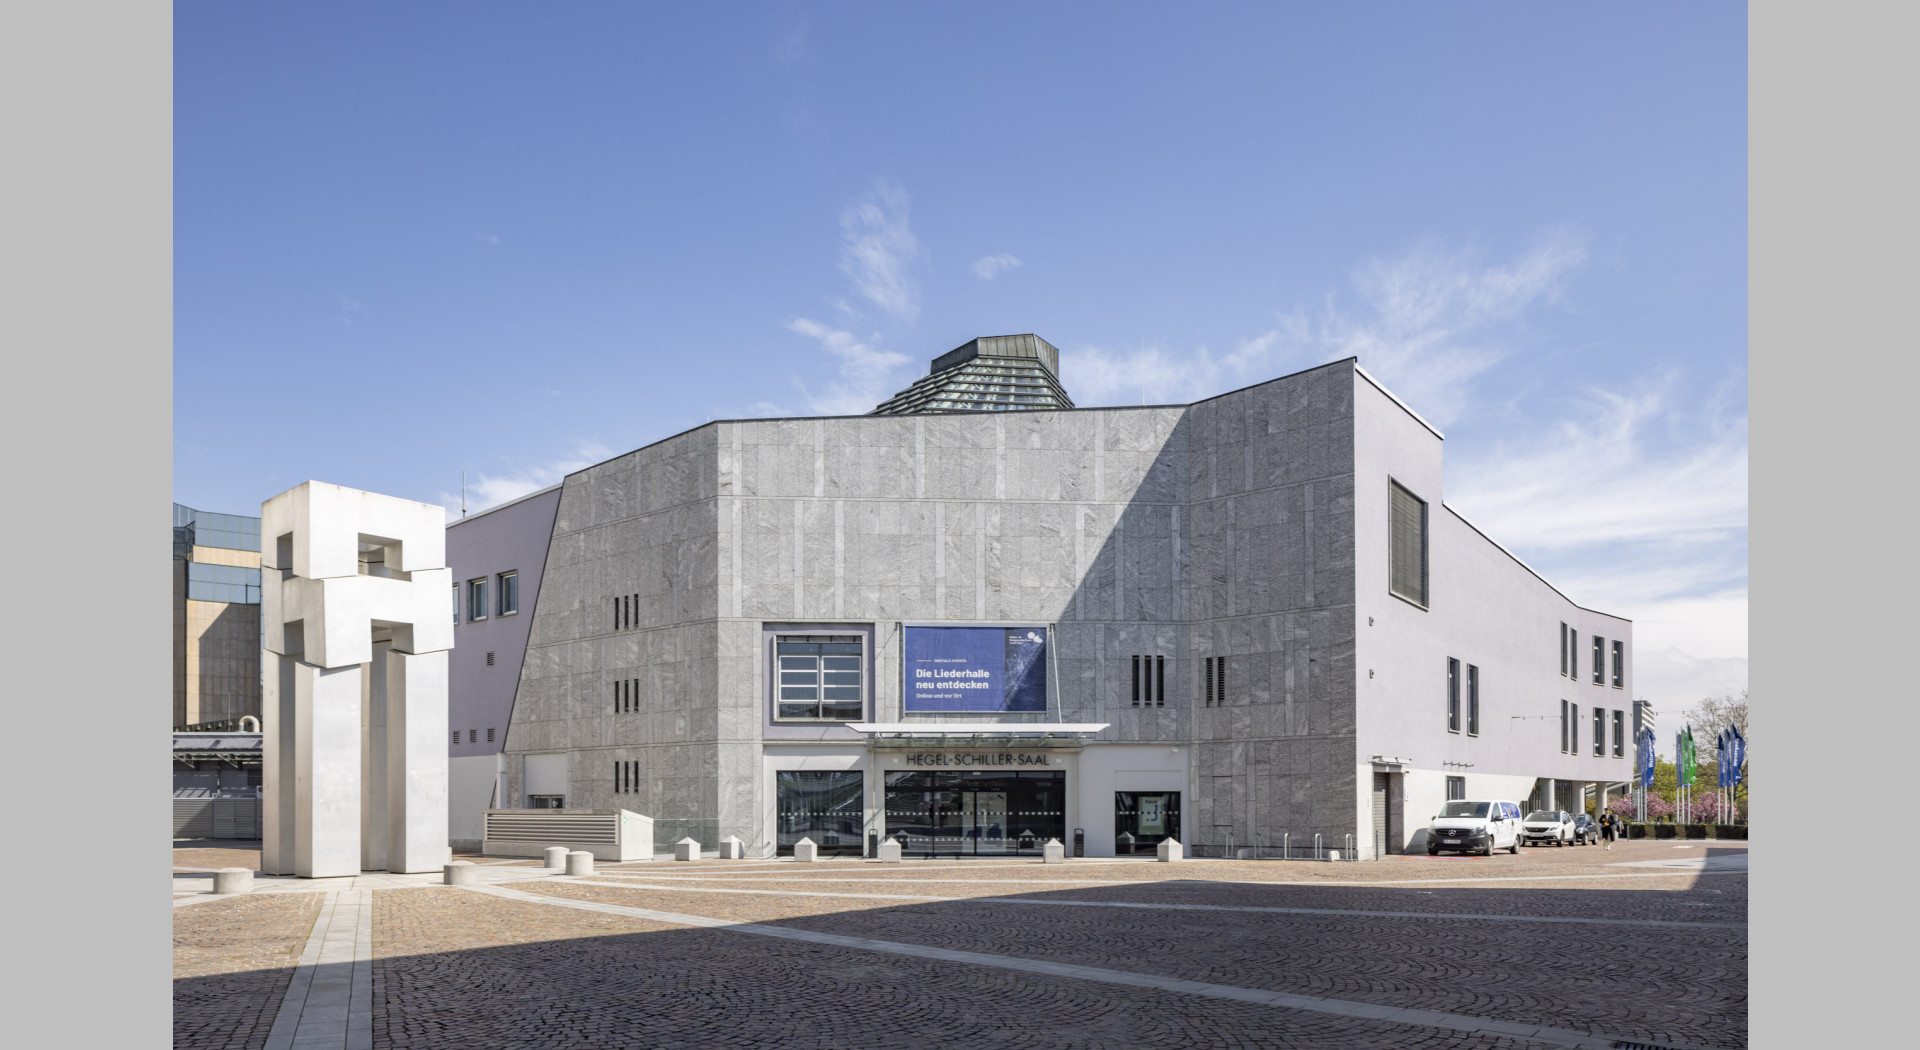 Ein gefragtes Venue für Kongresse, Tagungen und Konzerte: Das Kultur- und Kongresszentrum Liederhalle in Stuttgart